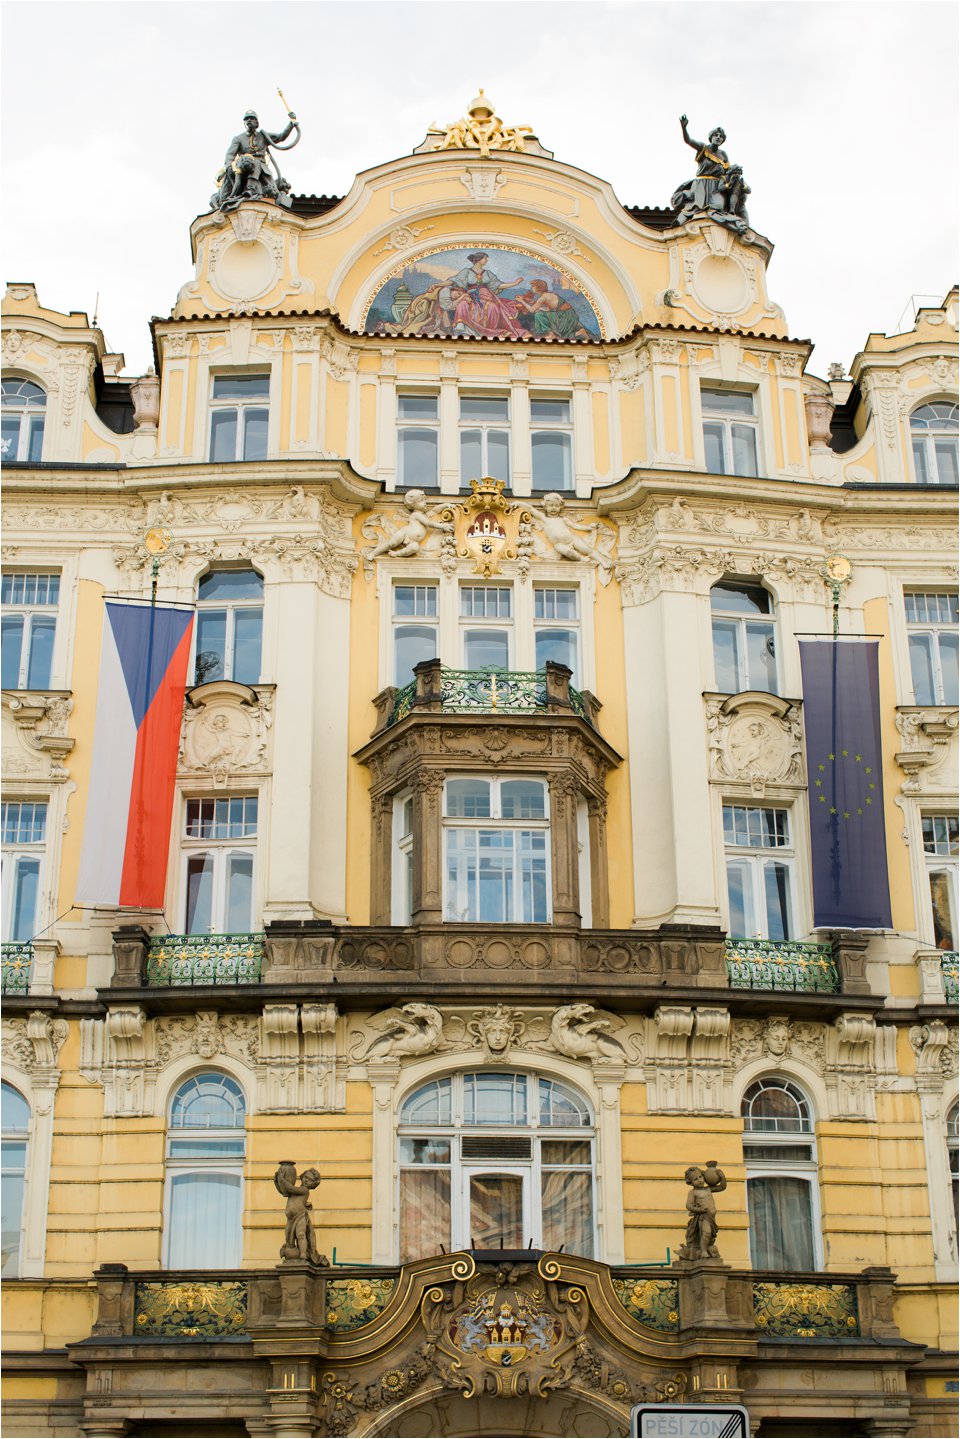 Hotel in Prague (C) Maundy Mitchell